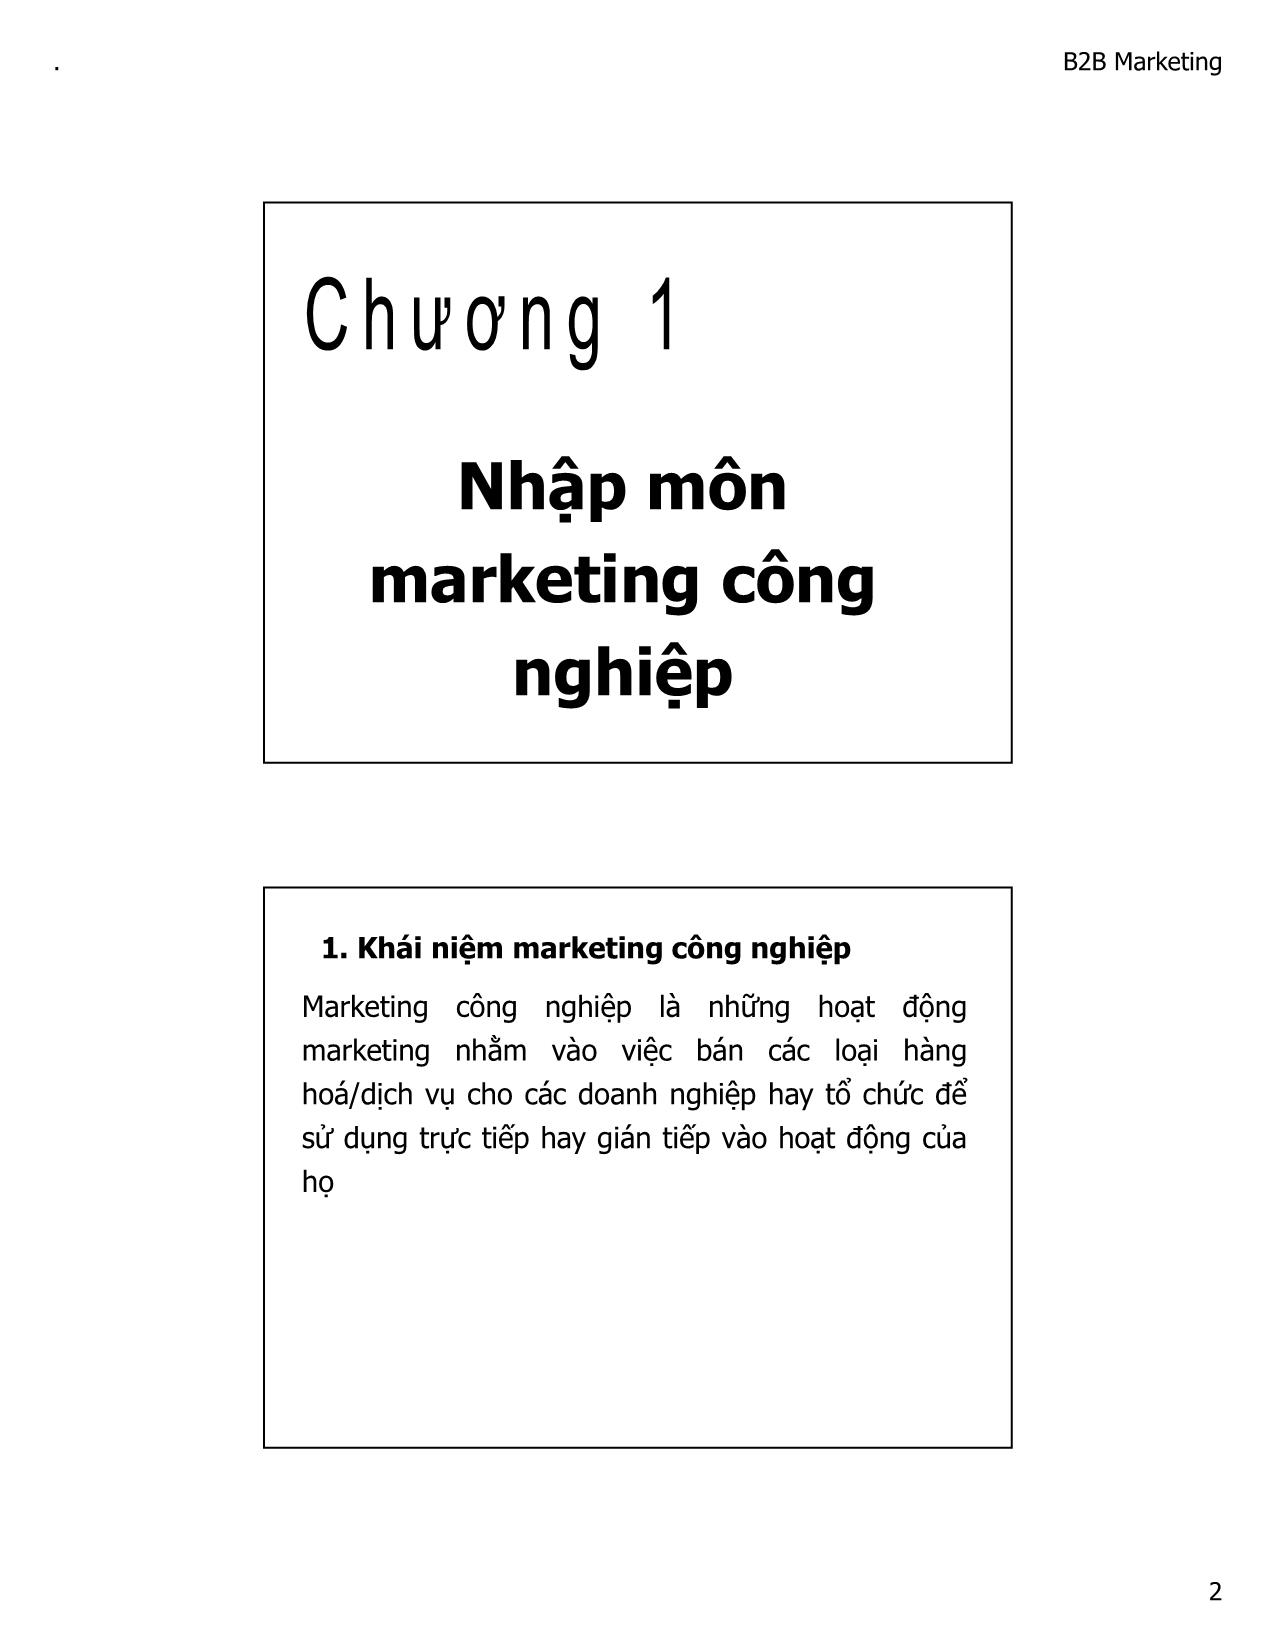 Bài giảng Marketing công nghiệp - Trần Thị Ý Nhi trang 2